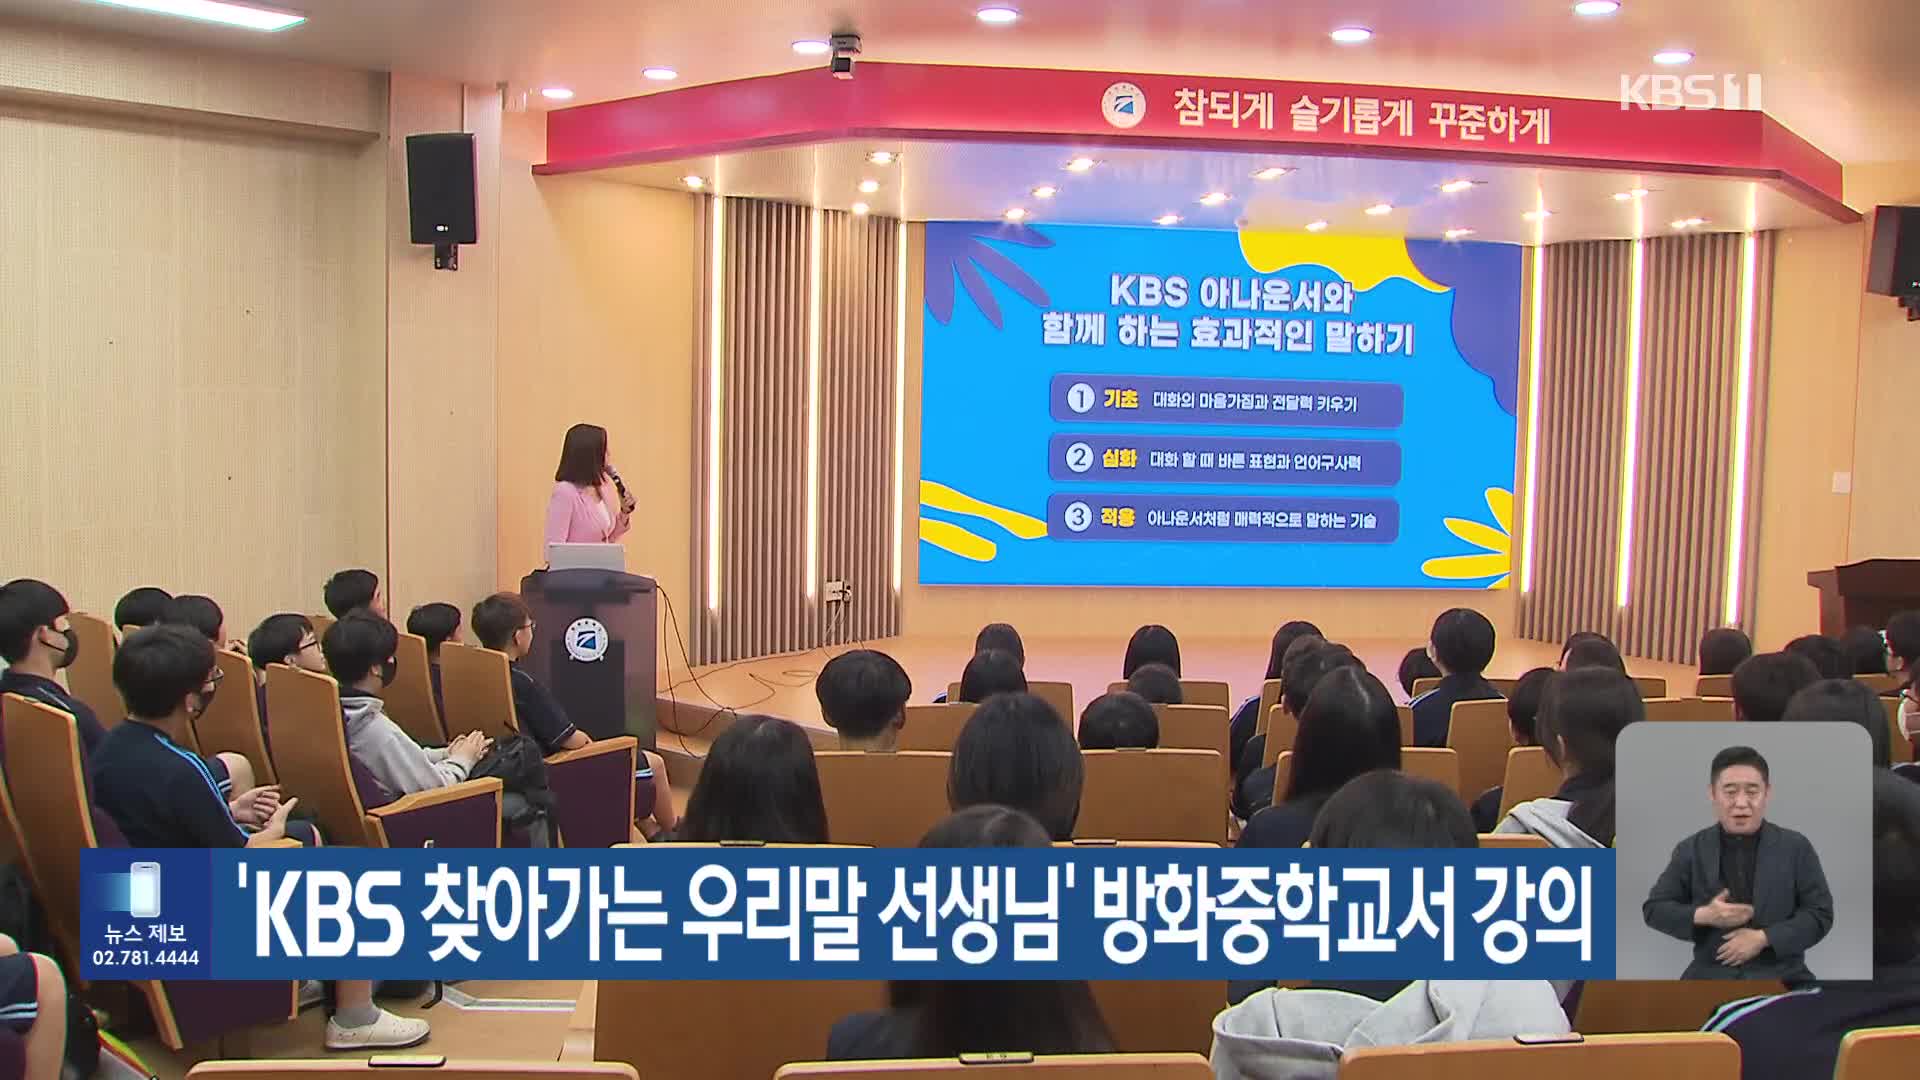 ‘KBS 찾아가는 우리말 선생님’ 방화중학교서 강의